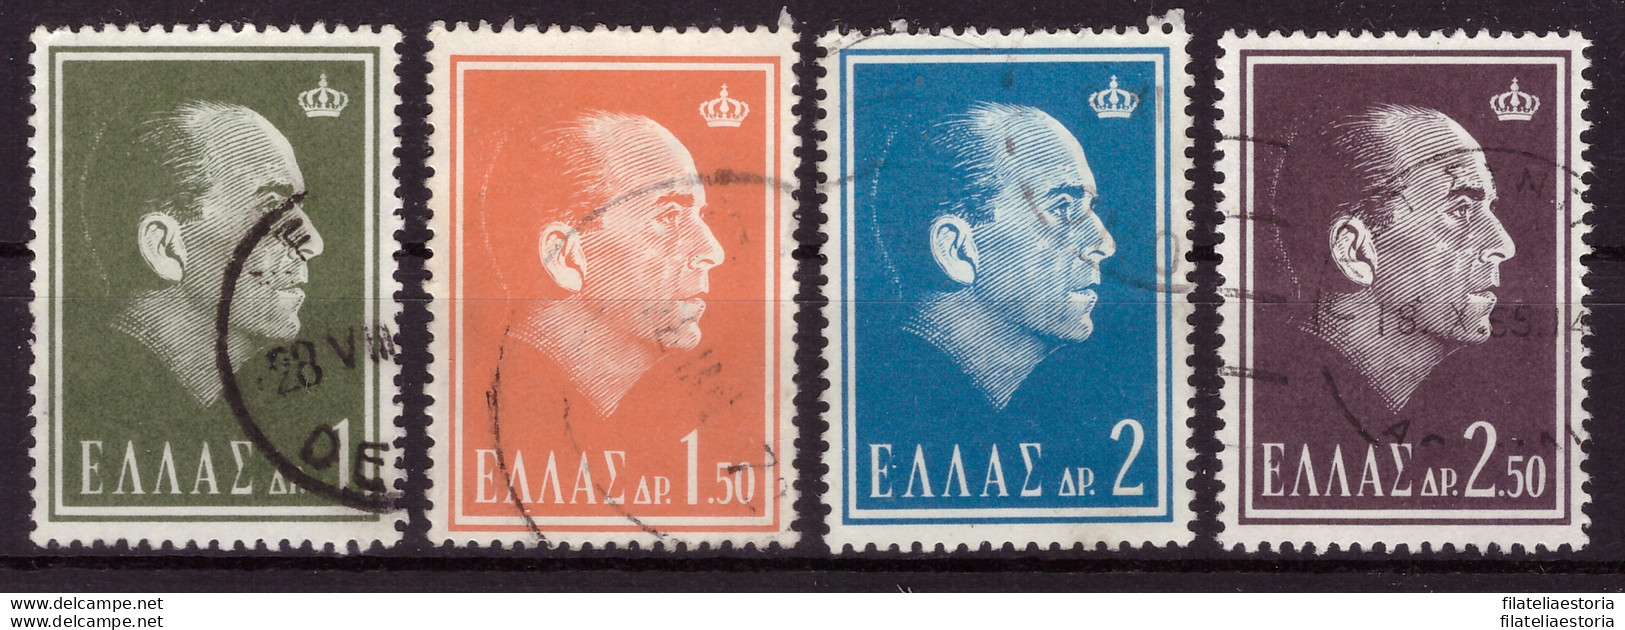 Grèce 1964 - Oblitéré - Paul Ier - Michel Nr. 837-840 (gre1002) - Oblitérés